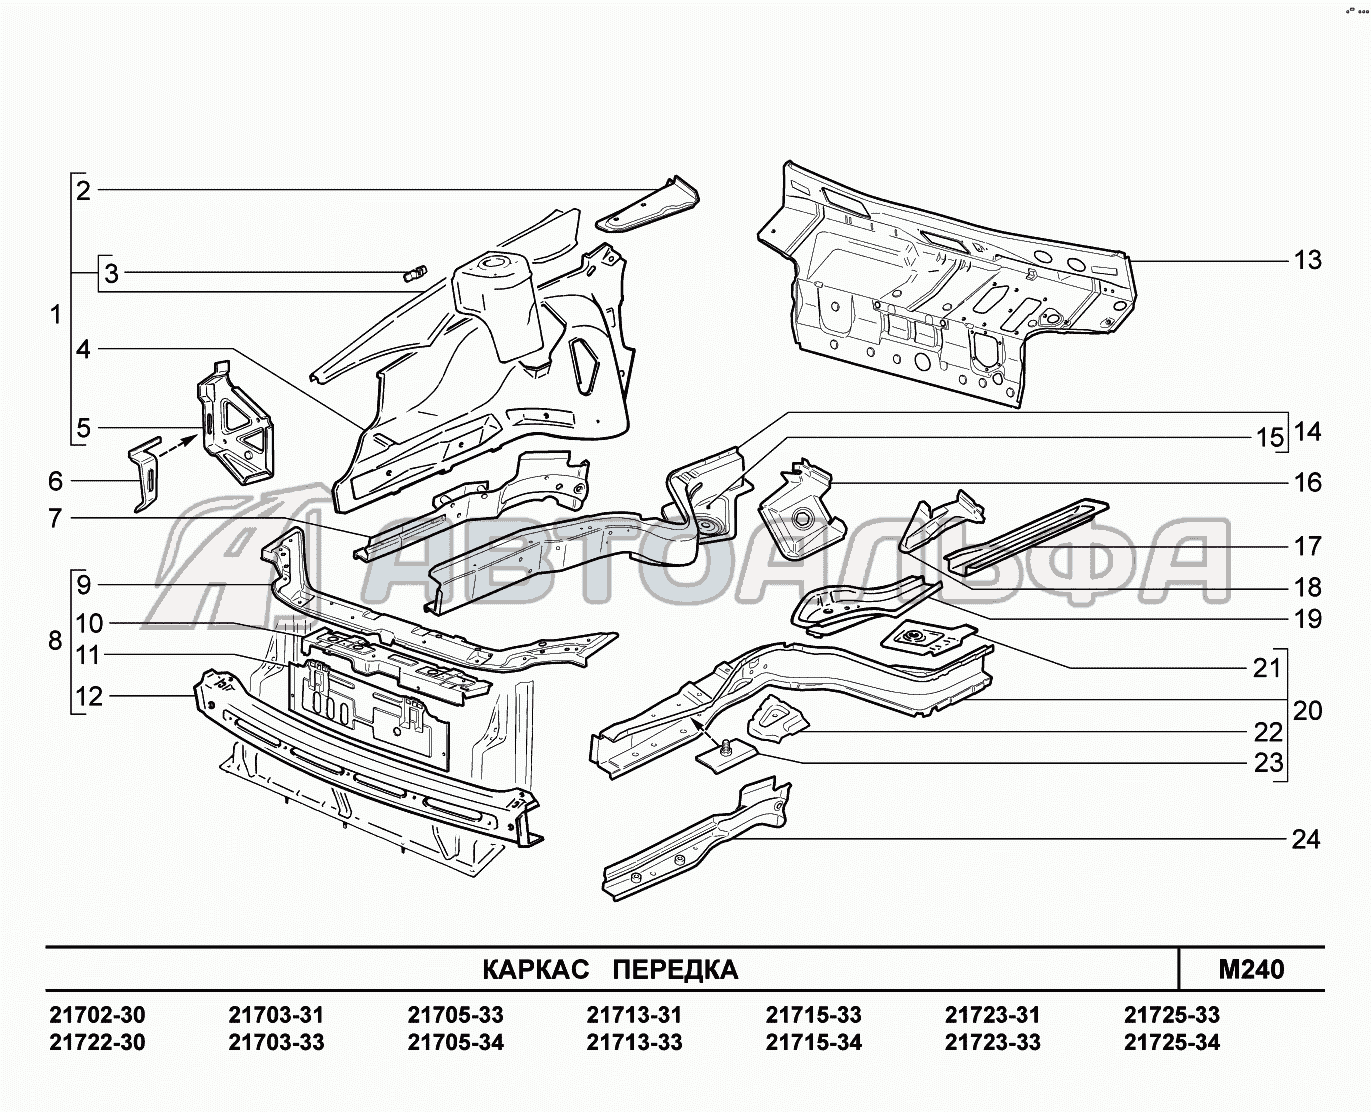 M240. Каркас передка LADA Priora FL (ВАЗ 2170), каталог 2013 г.